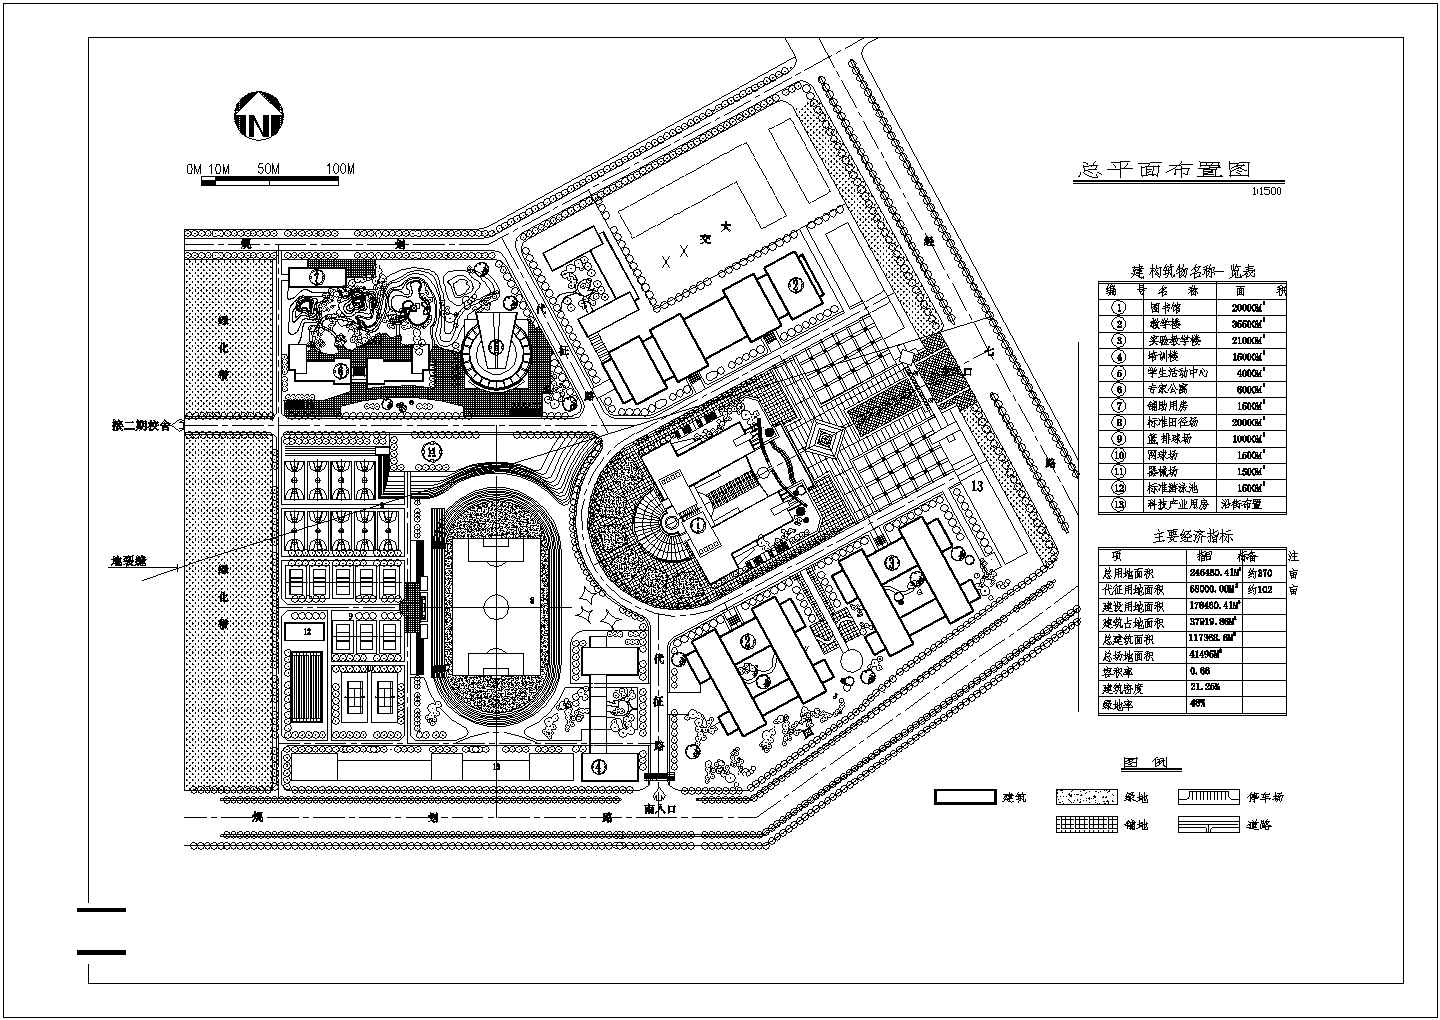 总用地面积约370亩大学校规划总平面布置图